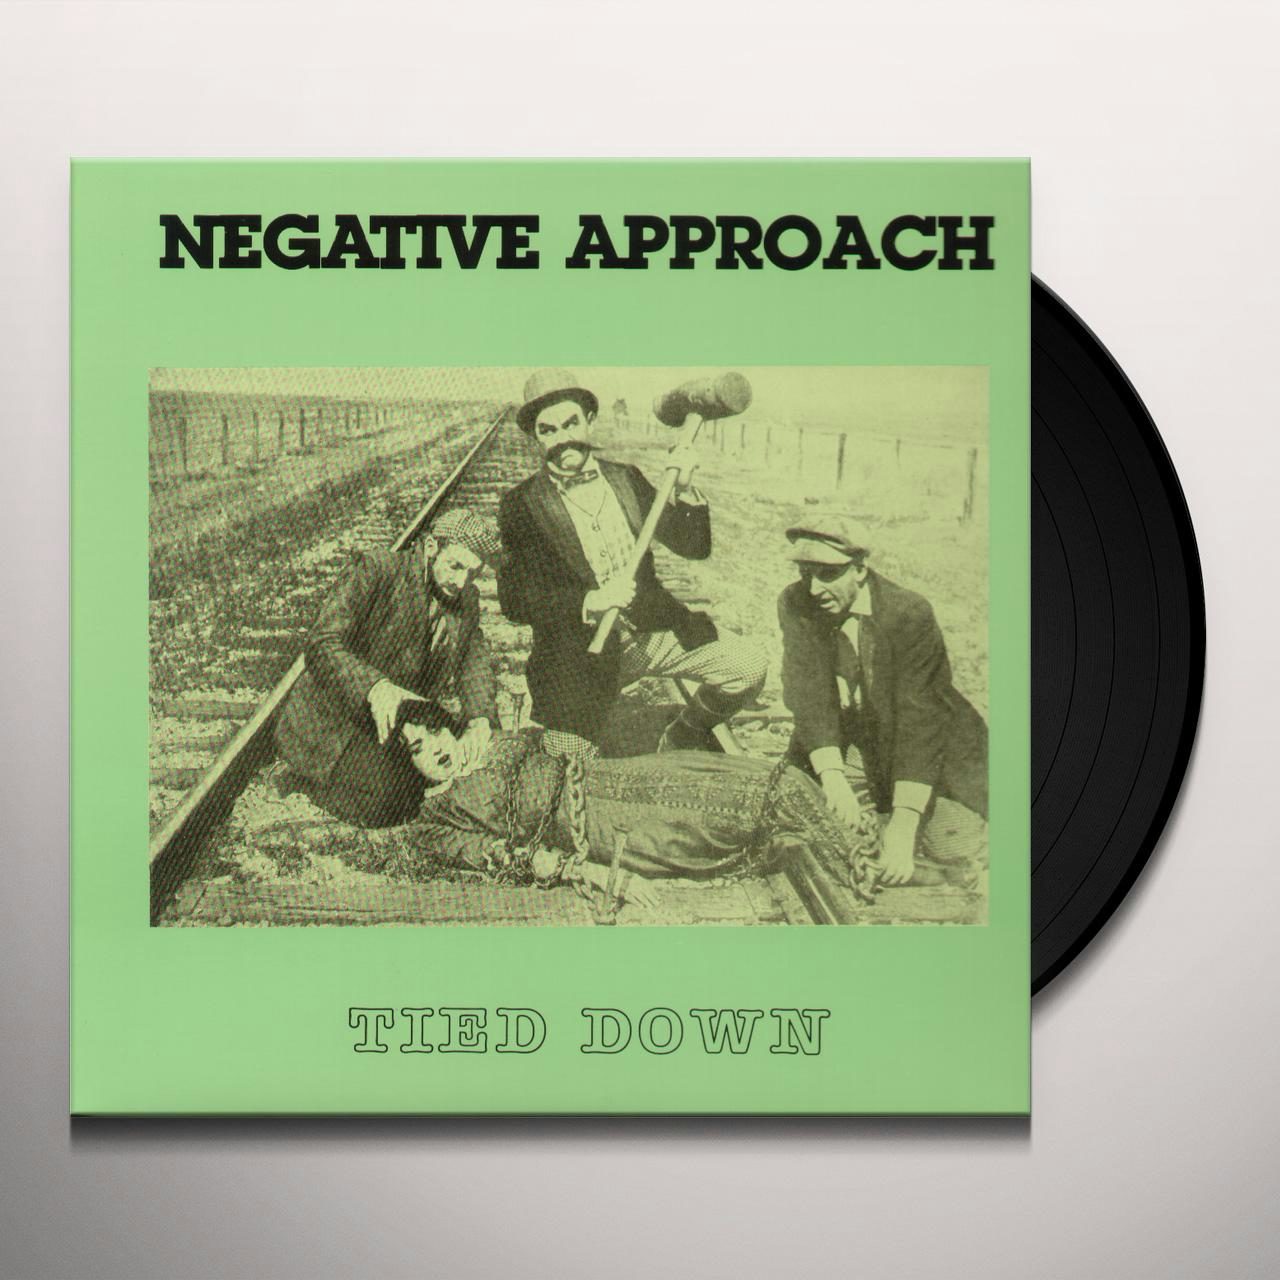 Negative Approach Store: Official Merch & Vinyl